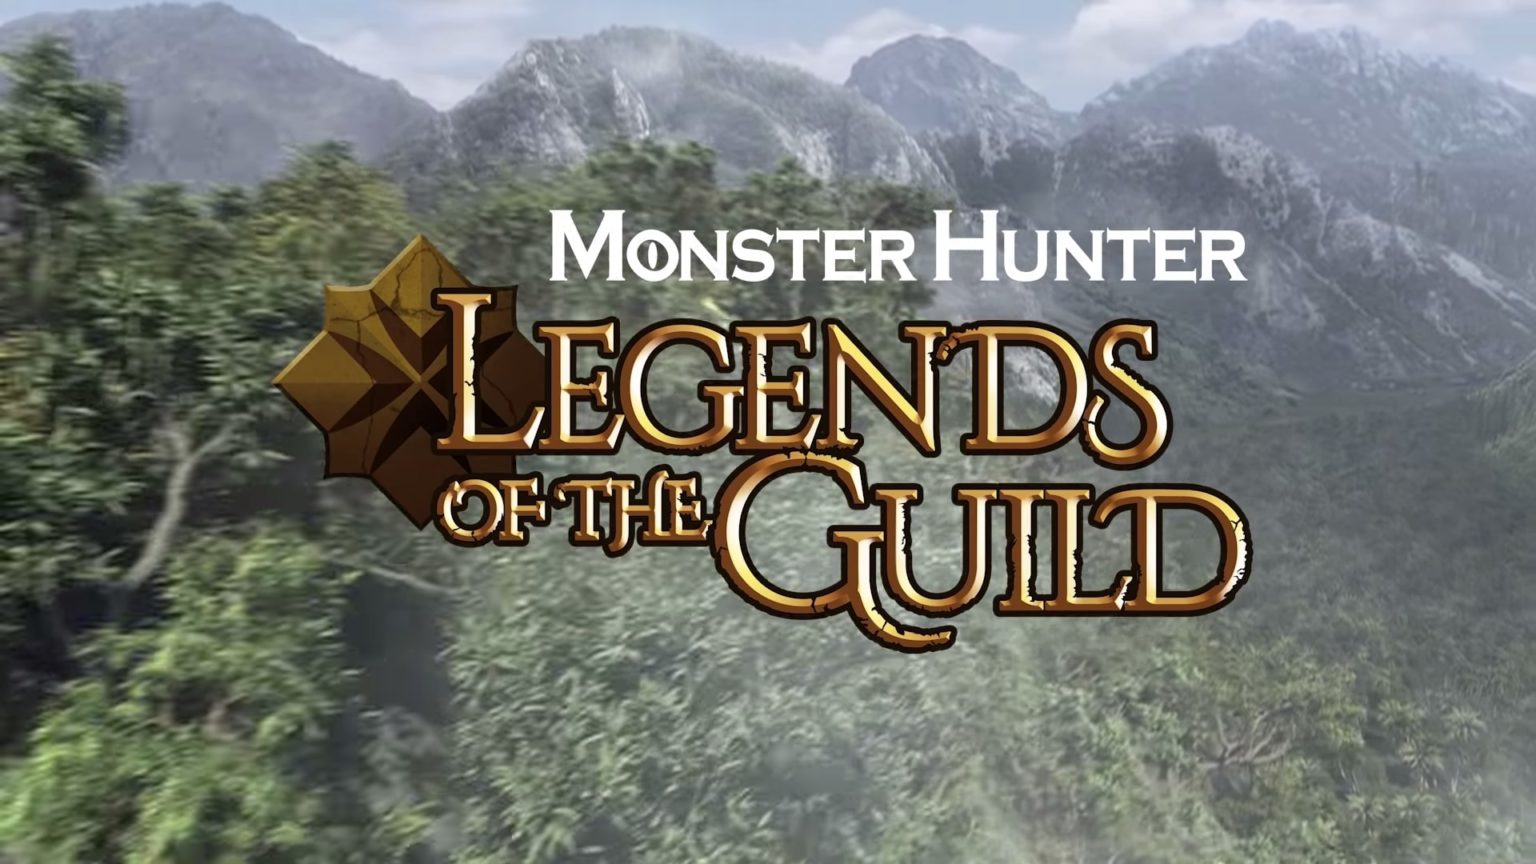 monster hunter legends of the guild download